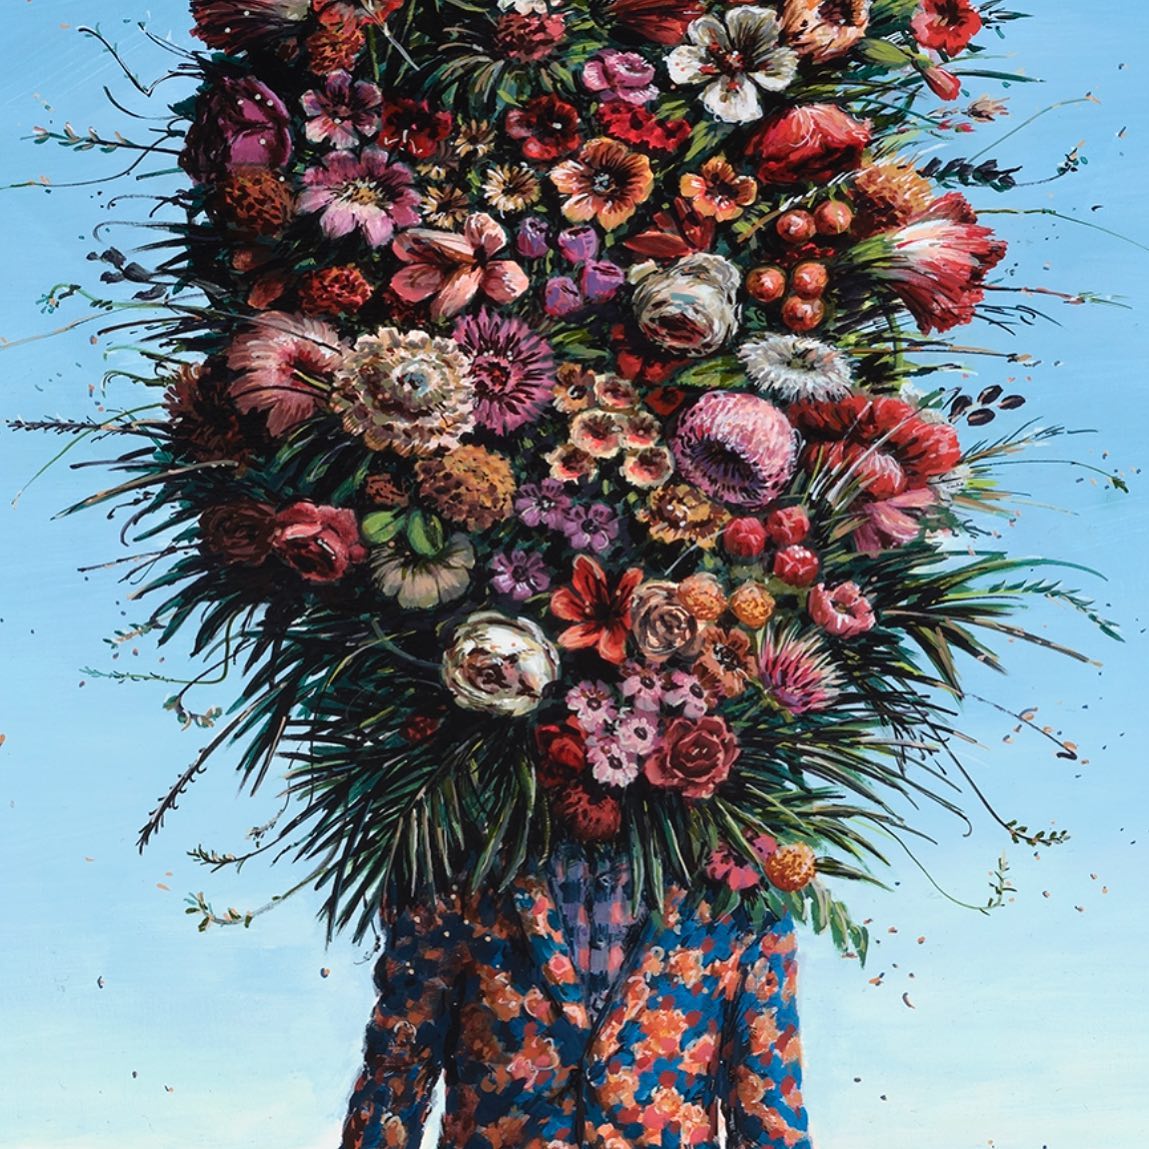 Ethan Murrow Floral Artworks - on Thursd